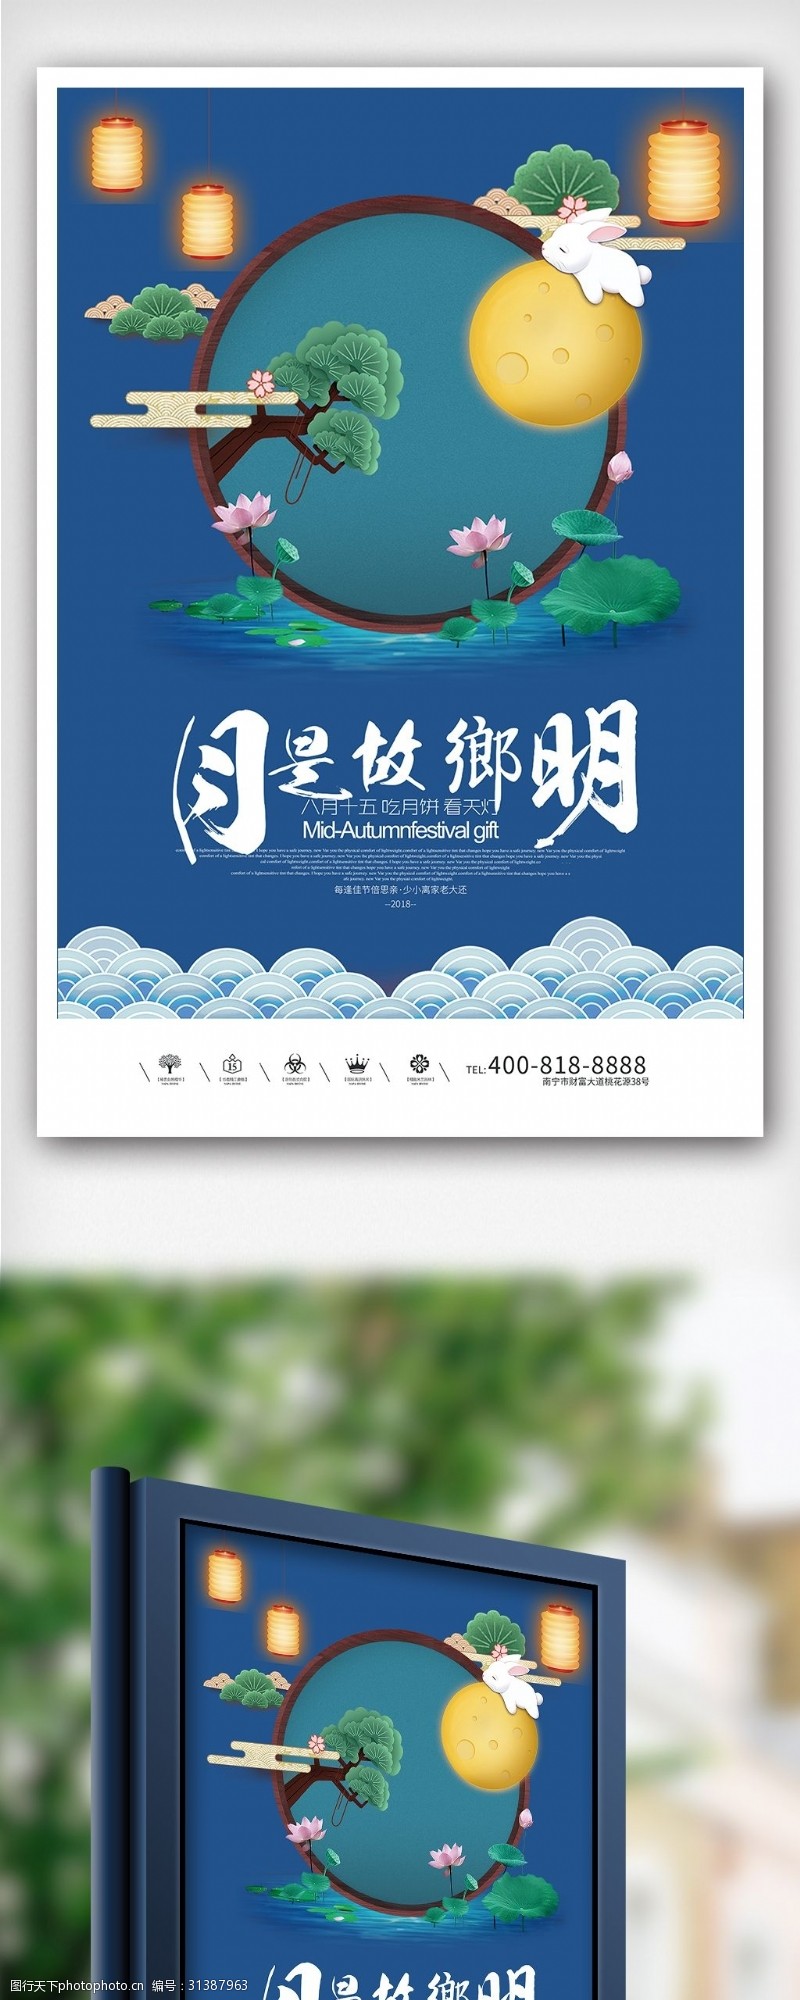 中秋节宣传创意卡通插画风格中秋户外海报